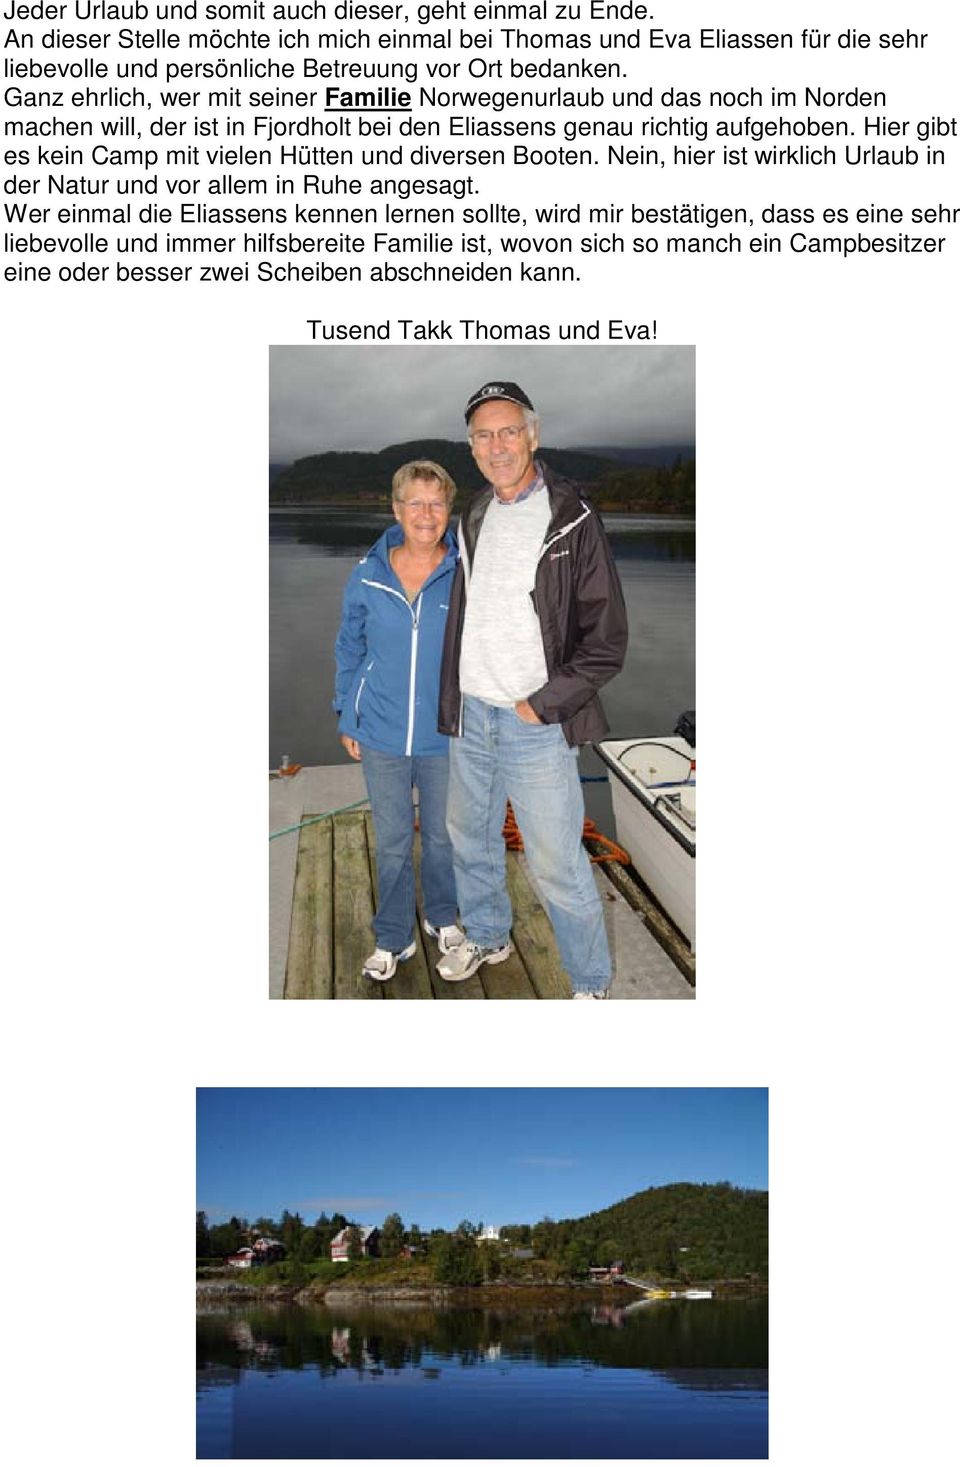 Ganz ehrlich, wer mit seiner Familie Norwegenurlaub und das noch im Norden machen will, der ist in Fjordholt bei den Eliassens genau richtig aufgehoben.